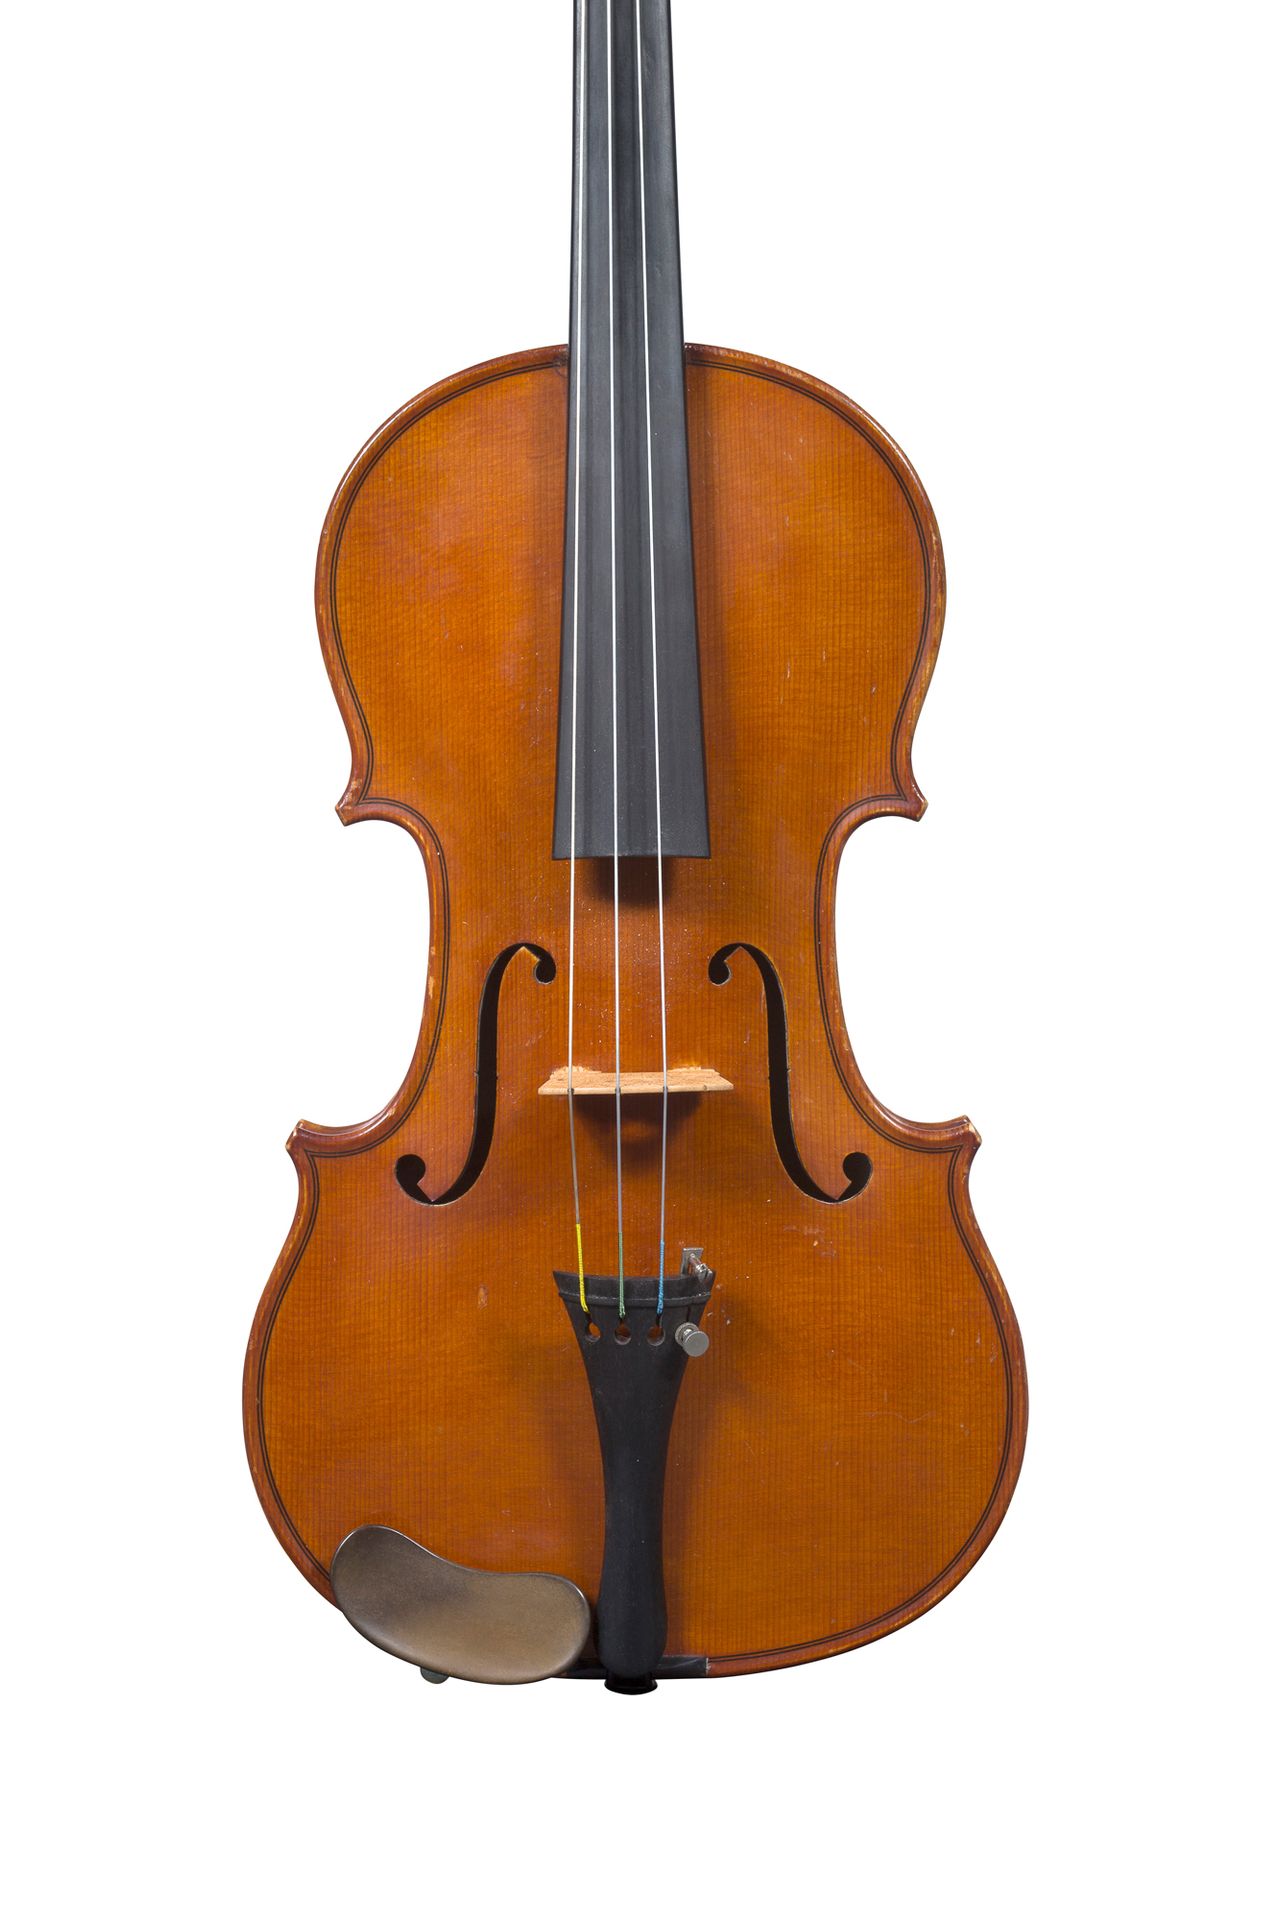 Null 1930-40年左右在Mirecourt制造的小提琴
带有Léon Mougenot Gauché的伪装标签
状况良好
随时可以演奏
背面有357毫米